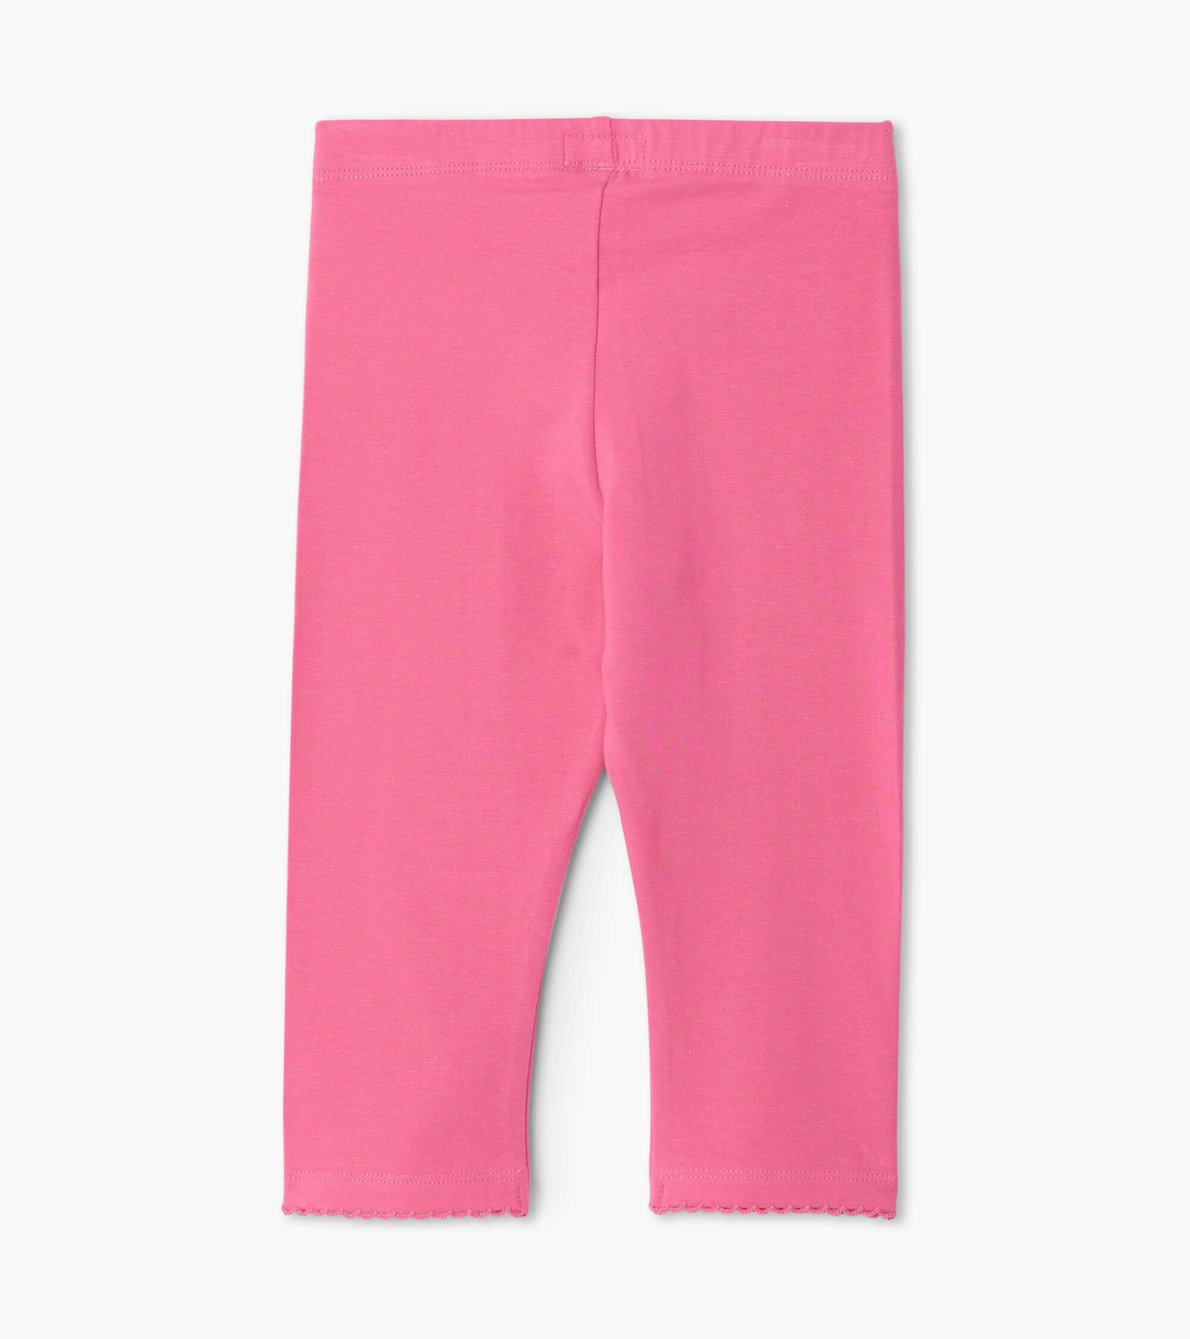 View larger image of Pink Capri Leggings